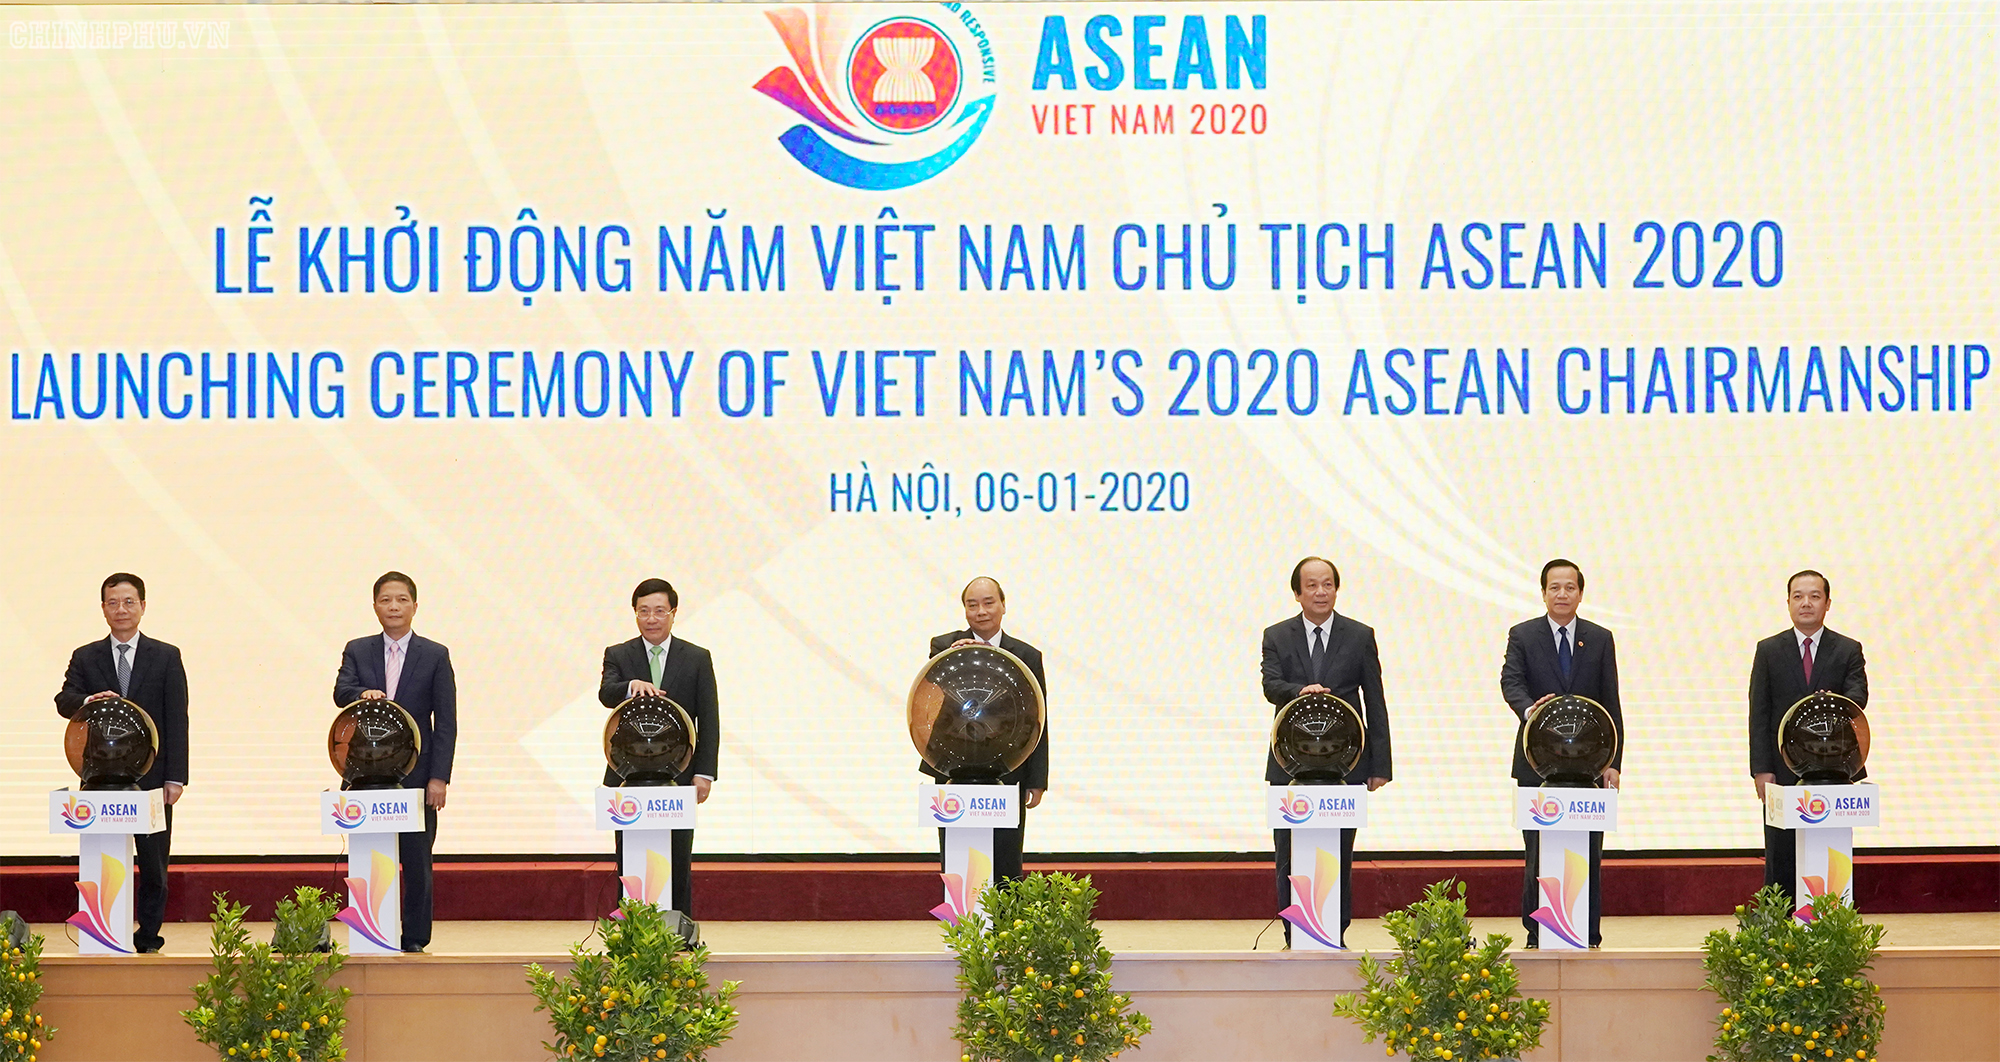   Thủ tướng Nguyễn Xuân Phúc, Phó Thủ tướng Phạm Bình Minh, lãnh đạo một số bộ ngành bấm nút khai trương website ASEAN 2020 - Ảnh: VGP/Quang Hiếu